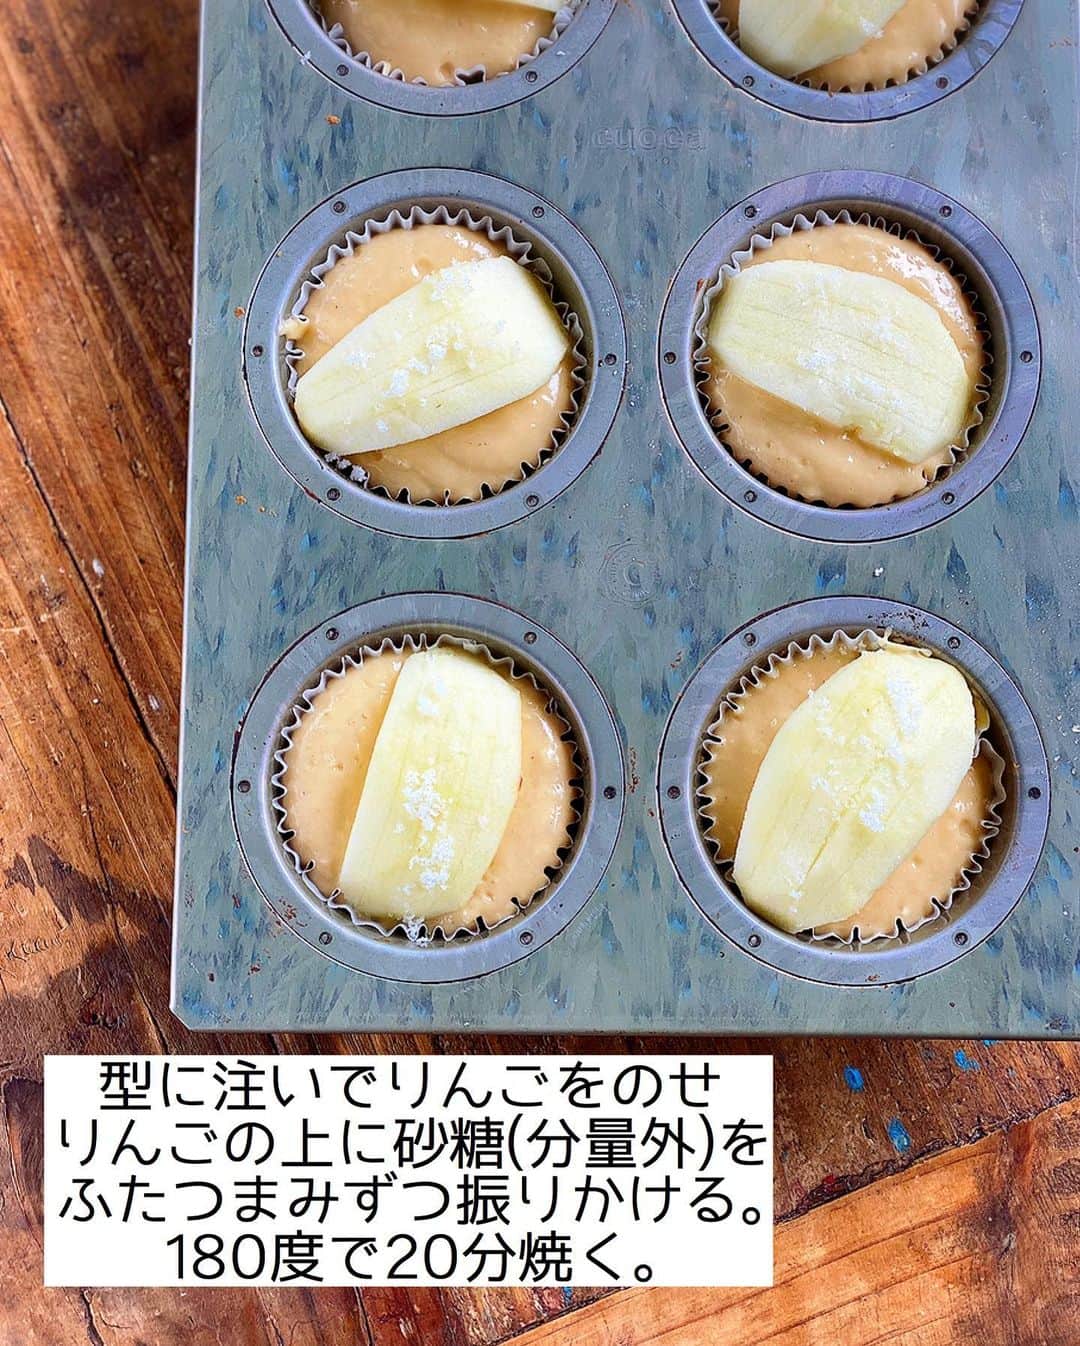 Mizuki【料理ブロガー・簡単レシピ】さんのインスタグラム写真 - (Mizuki【料理ブロガー・簡単レシピ】Instagram)「・﻿ 【#レシピ 】ーーーーーーー﻿ ホットケーキミックスで！﻿ ♡りんごのマフィン♡﻿ ーーーーーーーーーーーーー﻿ ﻿ ﻿ おはようございます(*^^*)﻿ ﻿ まずレシピの前に•••﻿ 新刊をお手に取っていただき﻿ 誠にありがとうございます🥺💗﻿ ほんとに私達の予想を遥かに上回り﻿ Amazon、楽天ブックス共に﻿ 初日にカートが落ちてしまいました😭﻿ 探して下さった方、誠に申し訳ございません(泣)﻿ 入荷次第お知らせさせていただきますので﻿ どうぞよろしくお願い致しますm(_ _)m﻿ (リアル書店さんにはまだ在庫がございます)﻿ ﻿ ﻿ ﻿ ﻿ ﻿ さて、レシピに参ります🧁﻿ ﻿ 今日はホケミスイーツ♡﻿ 秋にぴったりのりんごマフィンを﻿ ご紹介させていただきます(*^^*)﻿ ﻿ 混ぜるだけの生地に﻿ ゴロっと大ぶりのりんごをのせて﻿ 見た目も可愛く仕上げました♡﻿ ただのせるだけでも火が入り﻿ ジューシーな食感が味わえますよ♩﻿ ﻿ バターなしでとってもお手軽なので﻿ よかったらお試し下さいね(*´艸`)﻿ ﻿ ﻿ ﻿ ＿＿＿＿＿＿＿＿＿＿＿＿＿＿＿＿＿＿＿＿﻿ 【マフィン型1台(6個)分】﻿ りんご...小1個﻿ ●卵...1個﻿ ●砂糖...大3﻿ ●牛乳...70ml﻿ ●サラダ油...60g﻿ ●レモン汁...小1﻿ ホットケーキミックス...150g﻿ (好みで)シナモンパウダー...適量﻿ ﻿ (準備)型にグラシンカップを敷く。オーブンを180度に予熱する。﻿ 1.りんごは皮を剥いて6等分に切り、それぞれ縦4本ずつ包丁で切り込みを入れる。﻿ 2.ボウルに●を入れ、泡立て器でよく混ぜる。続けてホットケーキミックスも加えて更に混ぜる。﻿ 3.型に注ぎ、りんごを一切れずつのせ、りんごの上に砂糖(分量外)をふたつまみずつ振りかける。﻿ 4.予熱したオーブンで20分焼き、好みでシナモンを振る。﻿ ￣￣￣￣￣￣￣￣￣￣￣￣￣￣￣￣￣￣￣￣﻿ ﻿ ﻿ ﻿ 《ポイント》﻿ ♦︎りんごは型に収まるサイズに切って下さい♩﻿ ♦︎ホットケーキミックスを加えたら混ぜ過ぎず、粉っぽさがなくなったらストップ！﻿ ♦︎バターで作るタイプのりんごマフィンは【著書・ホットケーキミックスのお菓子】に掲載しています♩﻿ ﻿ ﻿ ﻿ ﻿ ﻿ ﻿ ﻿ ﻿ ⭐️発売中です⭐️﻿ _____________________________________﻿ \15分でいただきます/﻿ 📕#Mizukiの2品献立 📕﻿ (9月24日発売・マガジンハウス)﻿ ￣￣￣￣￣￣￣￣￣￣￣￣￣￣￣￣￣﻿ ﻿ 忙しい私たちには﻿ 2品くらいがちょうどいい！﻿ 『しんどくない献立、考えました』﻿ ￣￣￣￣￣￣￣￣￣￣￣￣￣￣￣￣﻿ ﻿ ーーーーーPART.1 ーーーーー﻿ 【Mizukiのお墨つき！２品献立ベスト10】﻿ 約15分でできる10献立をご紹介！﻿ メインは全部フライパン、副菜はレンチンor混ぜるだけ♡﻿ ﻿ ーーーーーPART.2 ーーーーー﻿ 【フライパンひとつ！今夜のメインおかず】﻿ 献立の主役になる肉や魚のおかず50品！﻿ Part3の副菜と組み合わせれば﻿ 献立のバリエーションが広がりますよ♩﻿ ﻿ ーーーーー PART.3 ーーーーー﻿ 【合間に作れる！ 野菜別かんたん副菜】﻿ レンチンor和えるだけの副菜レシピを﻿ 素材別にたっぷり収録♩﻿ ﻿ ーーーーー番外編ーーーーー﻿ 【ひとつで満足！ご飯＆麺】﻿ 【具だくさん！おかずスープ】﻿ 【オーブンいらずのおやつレシピ】﻿ ￣￣￣￣￣￣￣￣￣￣￣￣￣￣￣￣￣￣﻿ ハイライトにリンク🔗あります💓﻿ ﻿ ﻿ ﻿ ﻿ ﻿ ￣￣￣￣￣￣￣￣￣￣￣￣￣￣￣￣￣￣﻿ レシピを作って下さった際や﻿ レシピ本についてのご投稿には﻿ タグ付け( @mizuki_31cafe )して﻿ お知らせいただけると嬉しいです😊💕﻿ ﻿ ﻿ ﻿ ﻿ ﻿ #ホットケーキミックス#お菓子#マフィン#りんご#Mizuki#簡単レシピ#時短レシピ#節約レシピ#料理#フーディーテーブル#マカロニメイト#おうちごはん#デリスタグラマー#料理好きな人と繋がりたい#食べ物#料理記録#おうちごはんlover#写真好きな人と繋がりたい#foodpic#cooking#recipe#lin_stagrammer#foodporn#yummy#f52grams#りんごマフィンm」9月25日 7時45分 - mizuki_31cafe